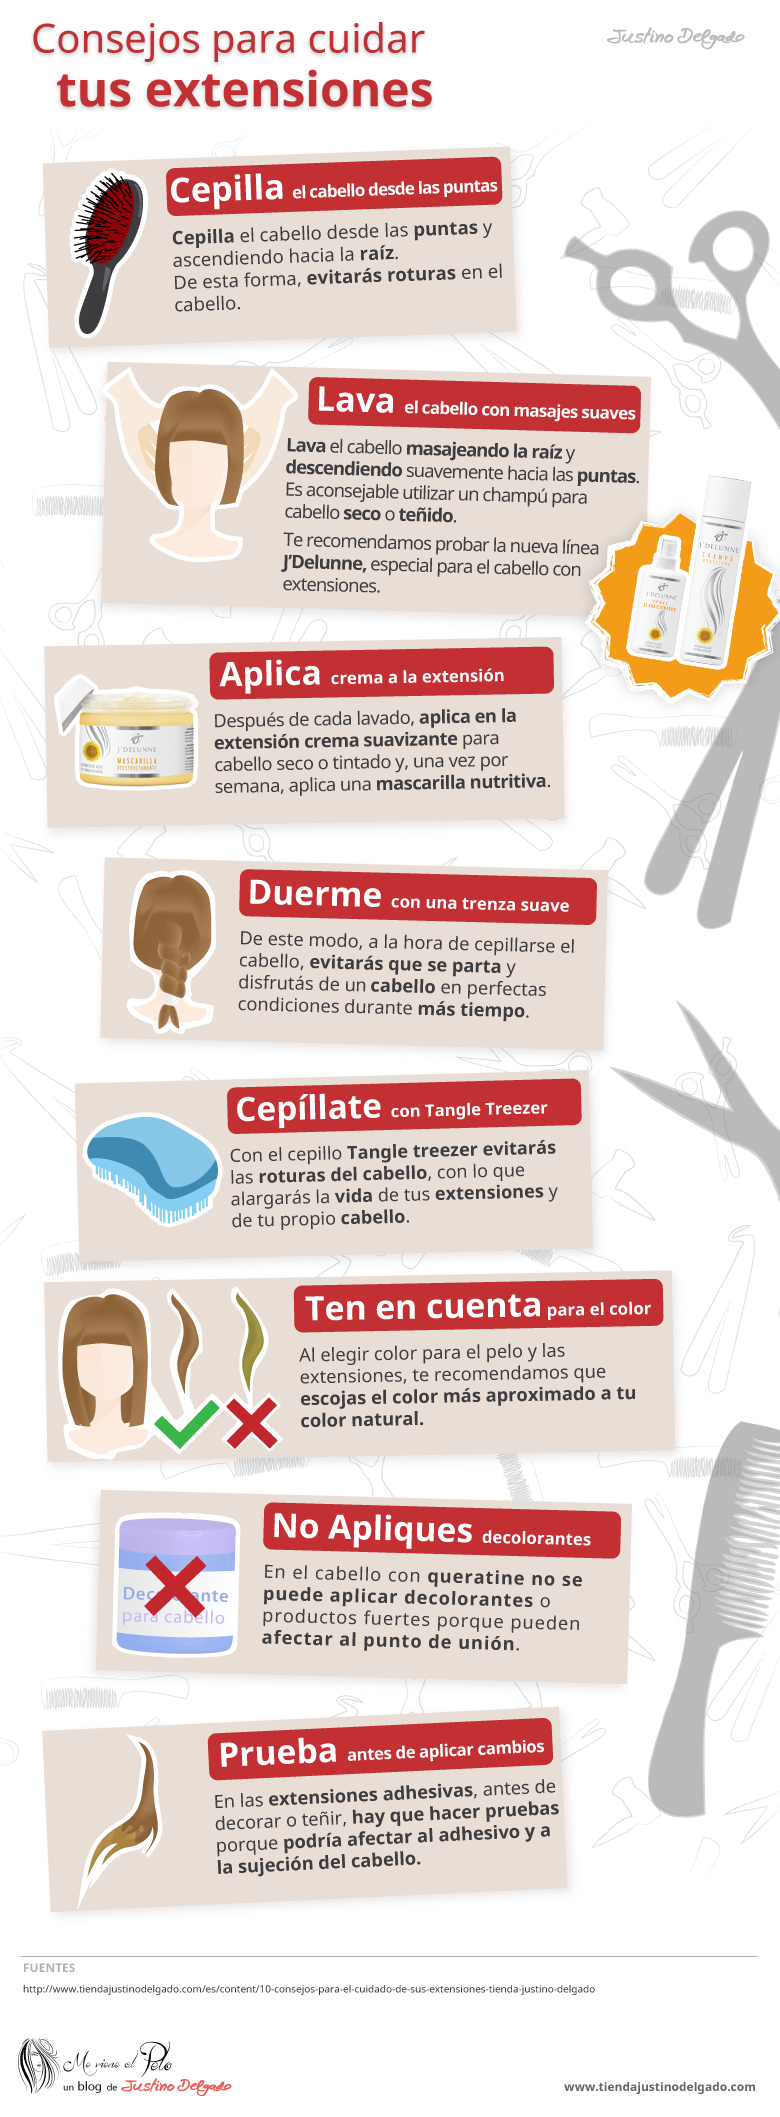 Infografía: Cómo cuidar tus extensiones de pelo natural